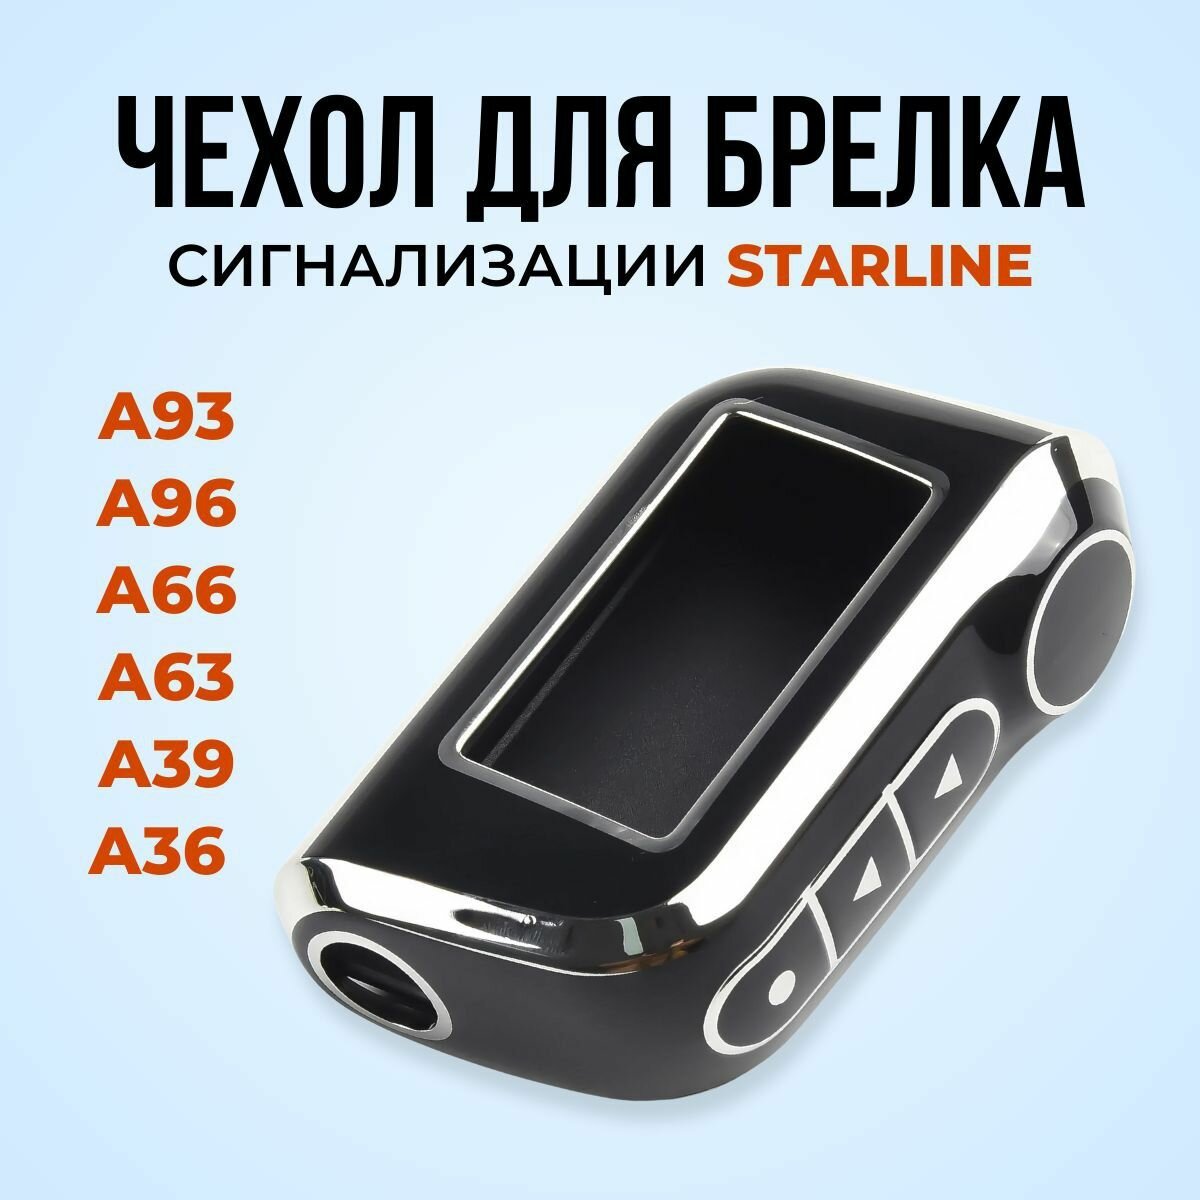 Чехол для брелока ( пульта ) автомобильной сигнализации Starline A63 / A93 /